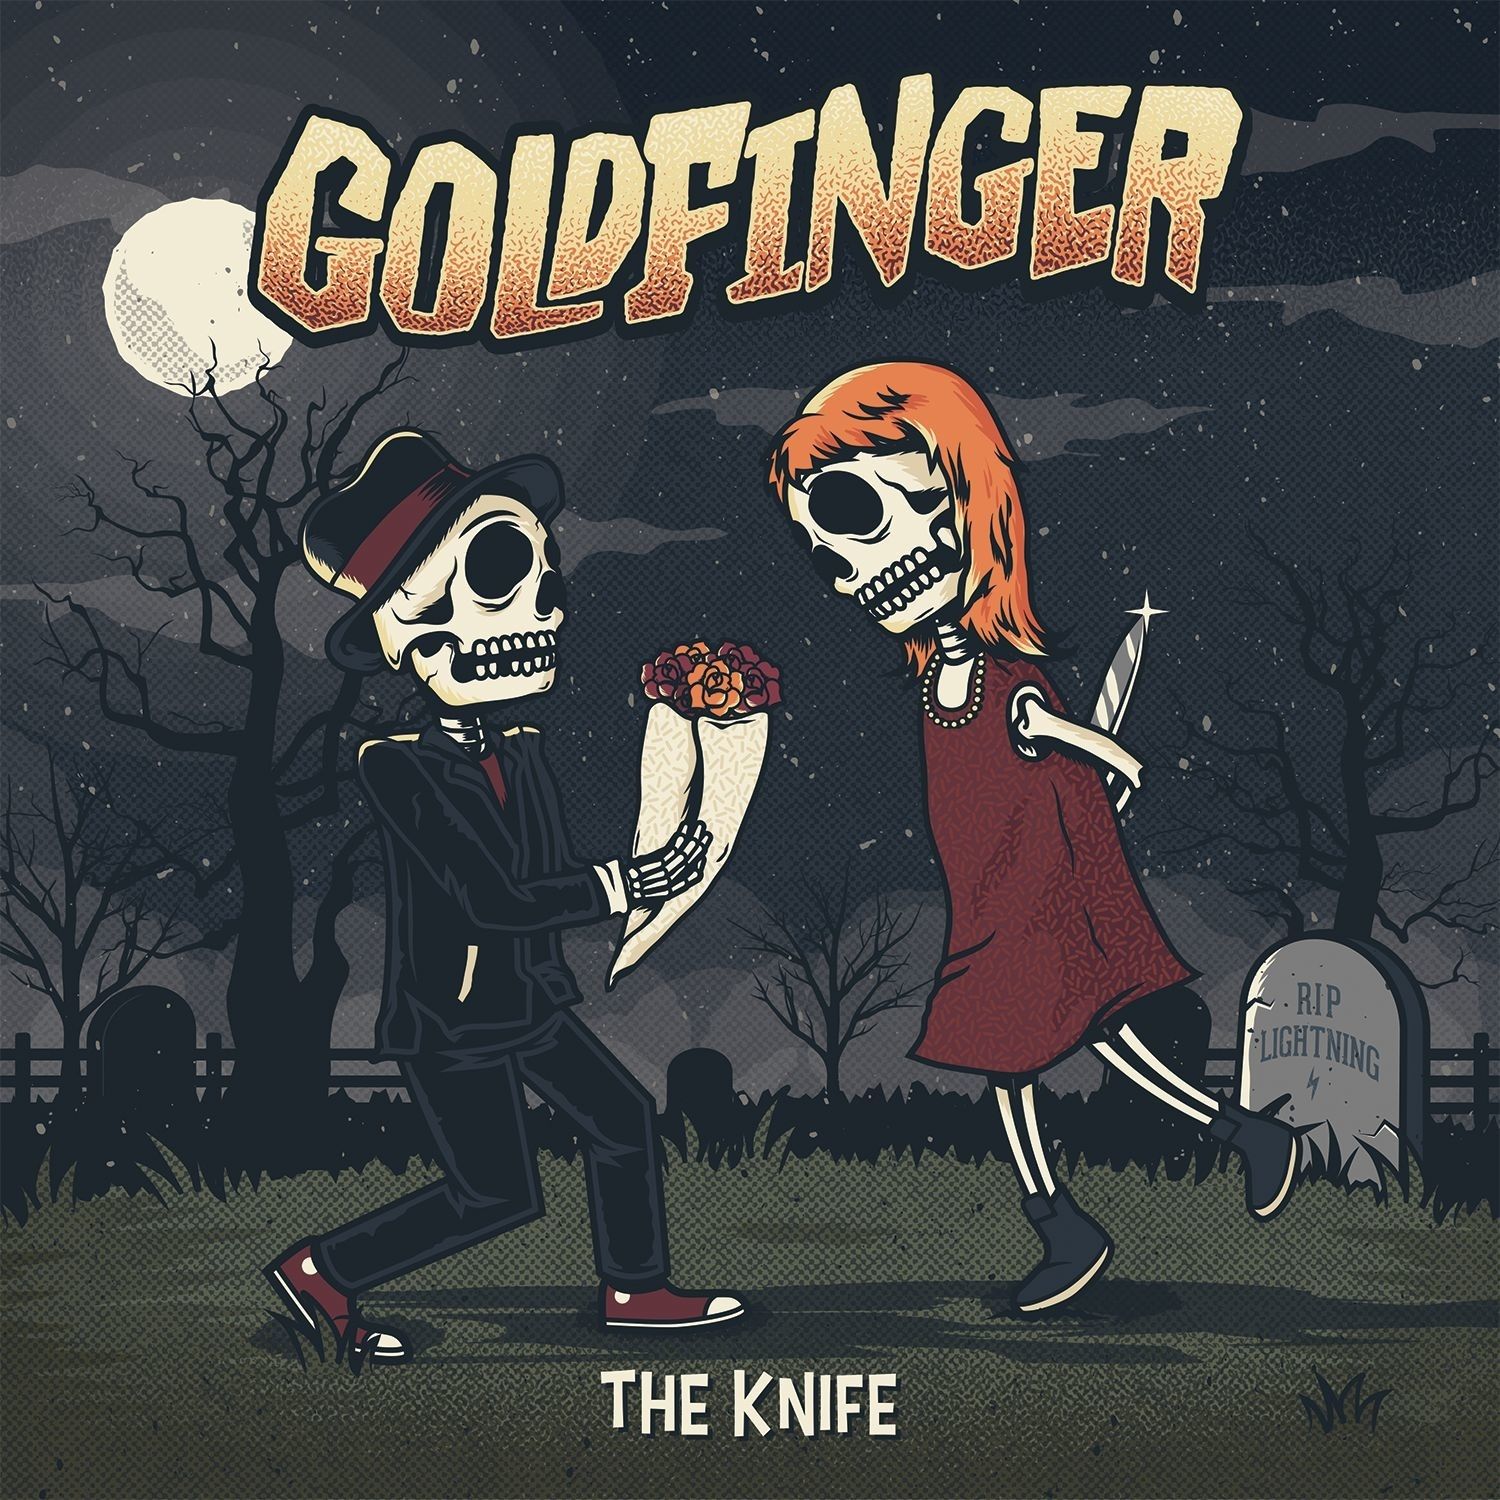 Imagem do álbum The Knife do(a) artista Goldfinger